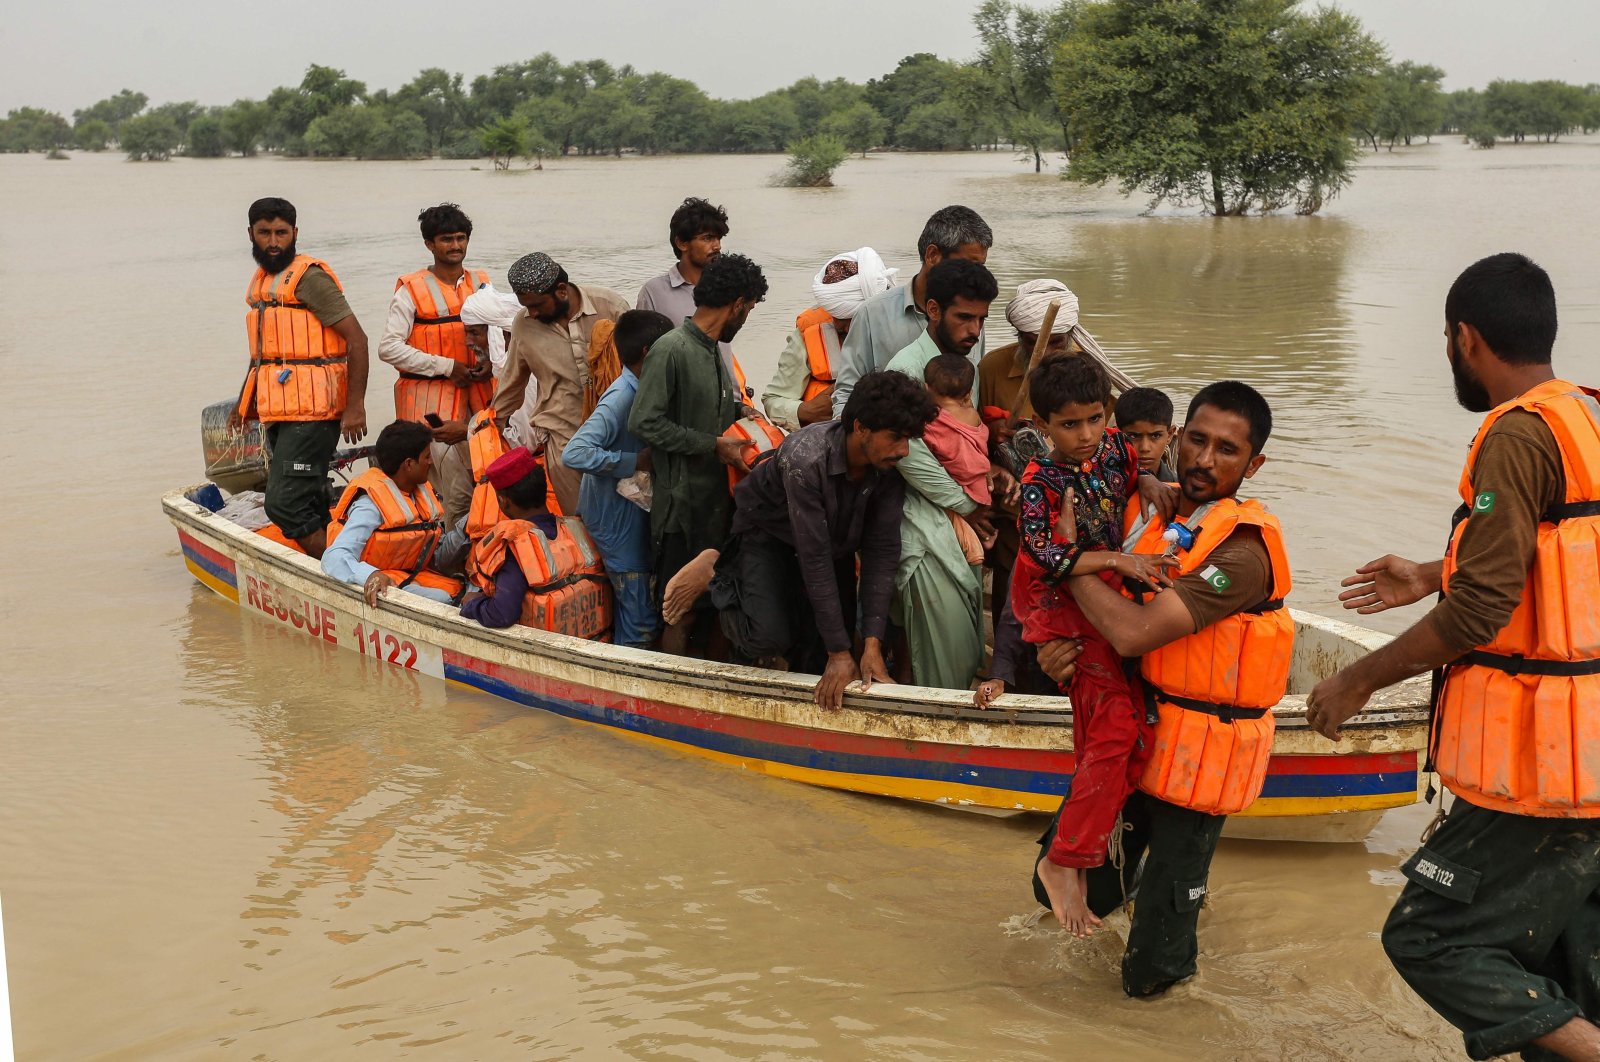 Korban tewas akibat banjir di Pakistan hampir menyentuh angka 1.000